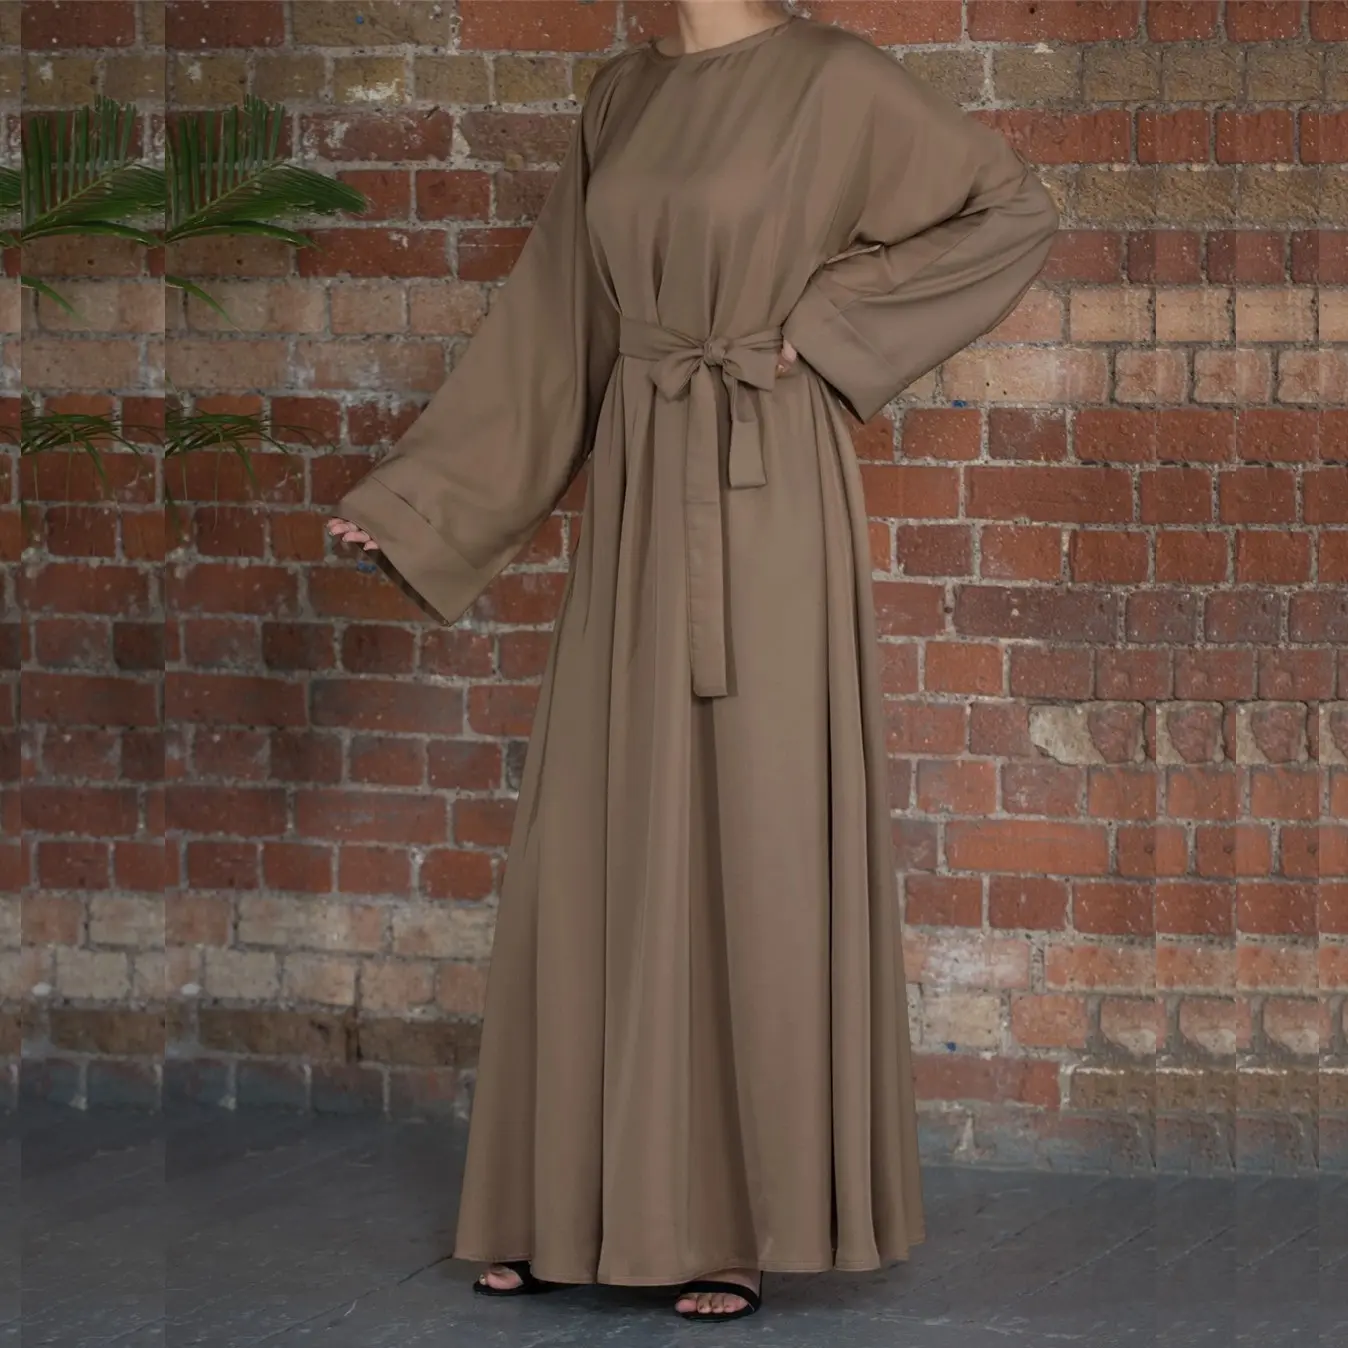 Damen solide große Polyesterkleid langer Maxi-Kaftan Abaya Dubai muslimisches Kleid für Erwachsene inspiriert vom arabischen Kleid